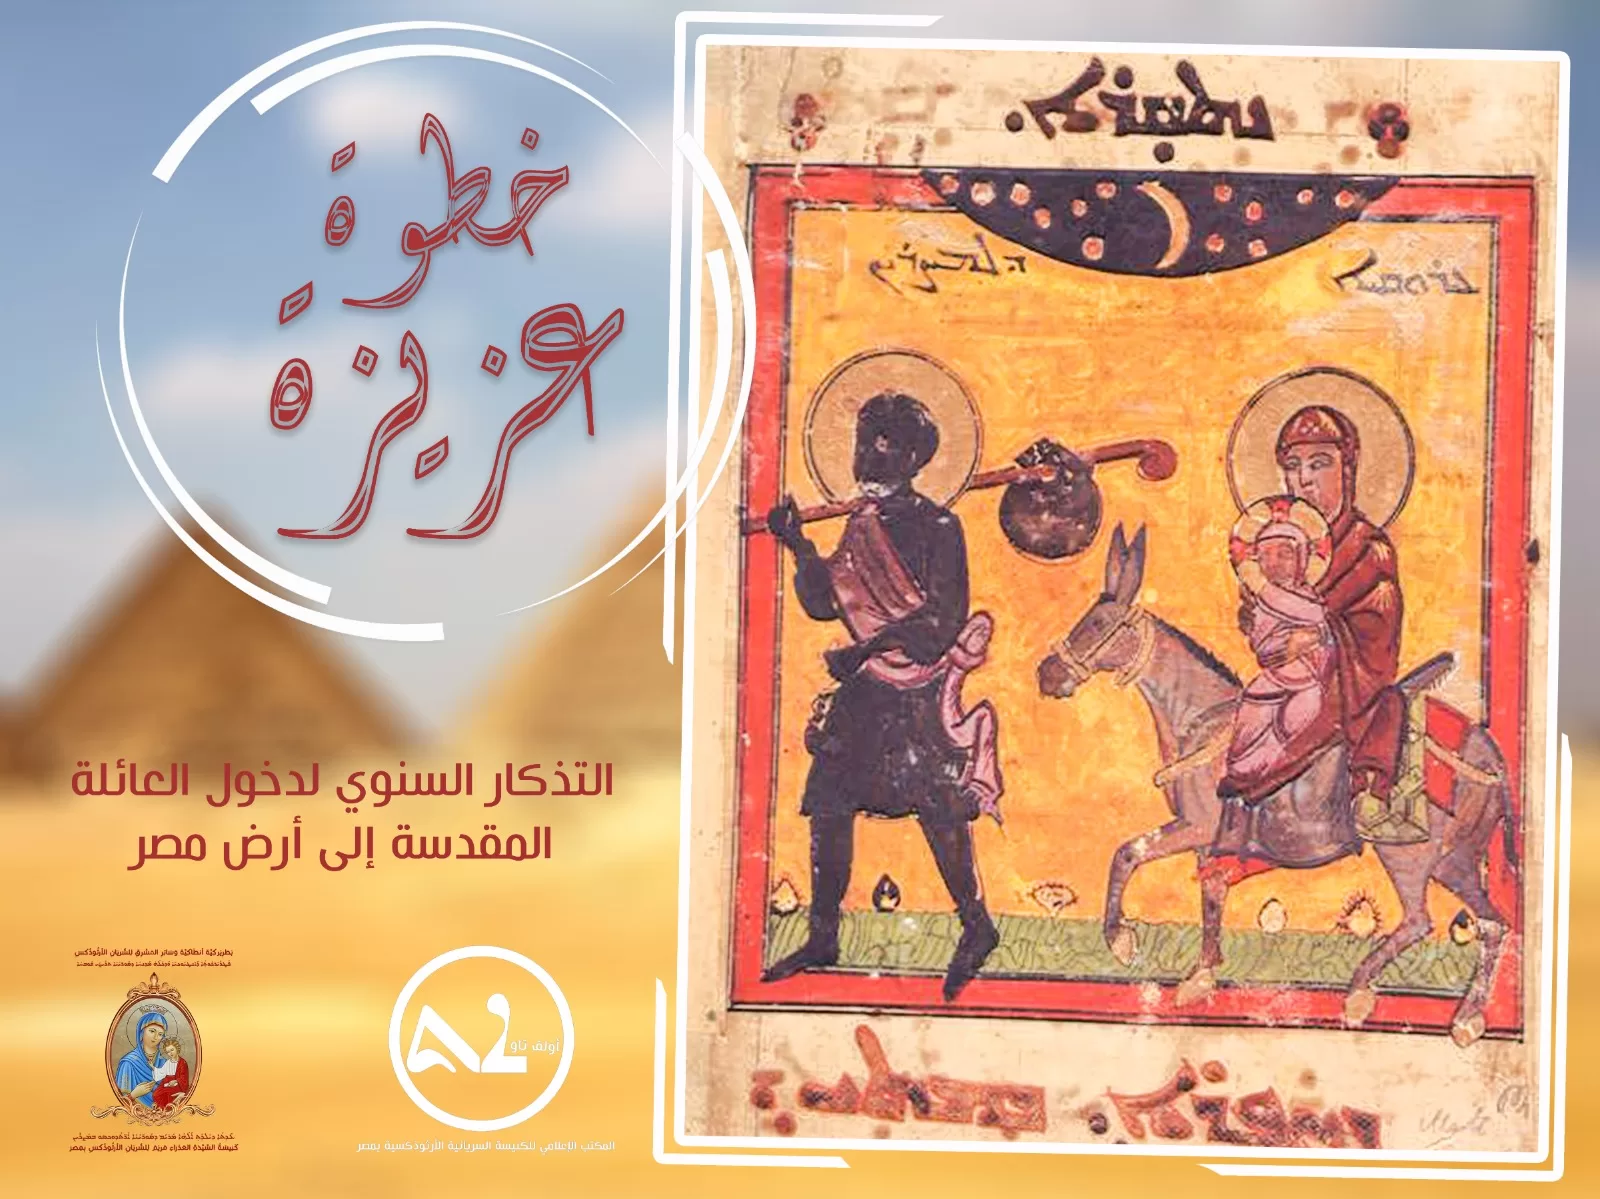 ربان الكنيسة السريانية الأرثوذكسية في مصر يعلن انطلاق الفيلم الوثائقي (خطوة عزيزة) يوم 1 حزيران (يونيو) القادم​